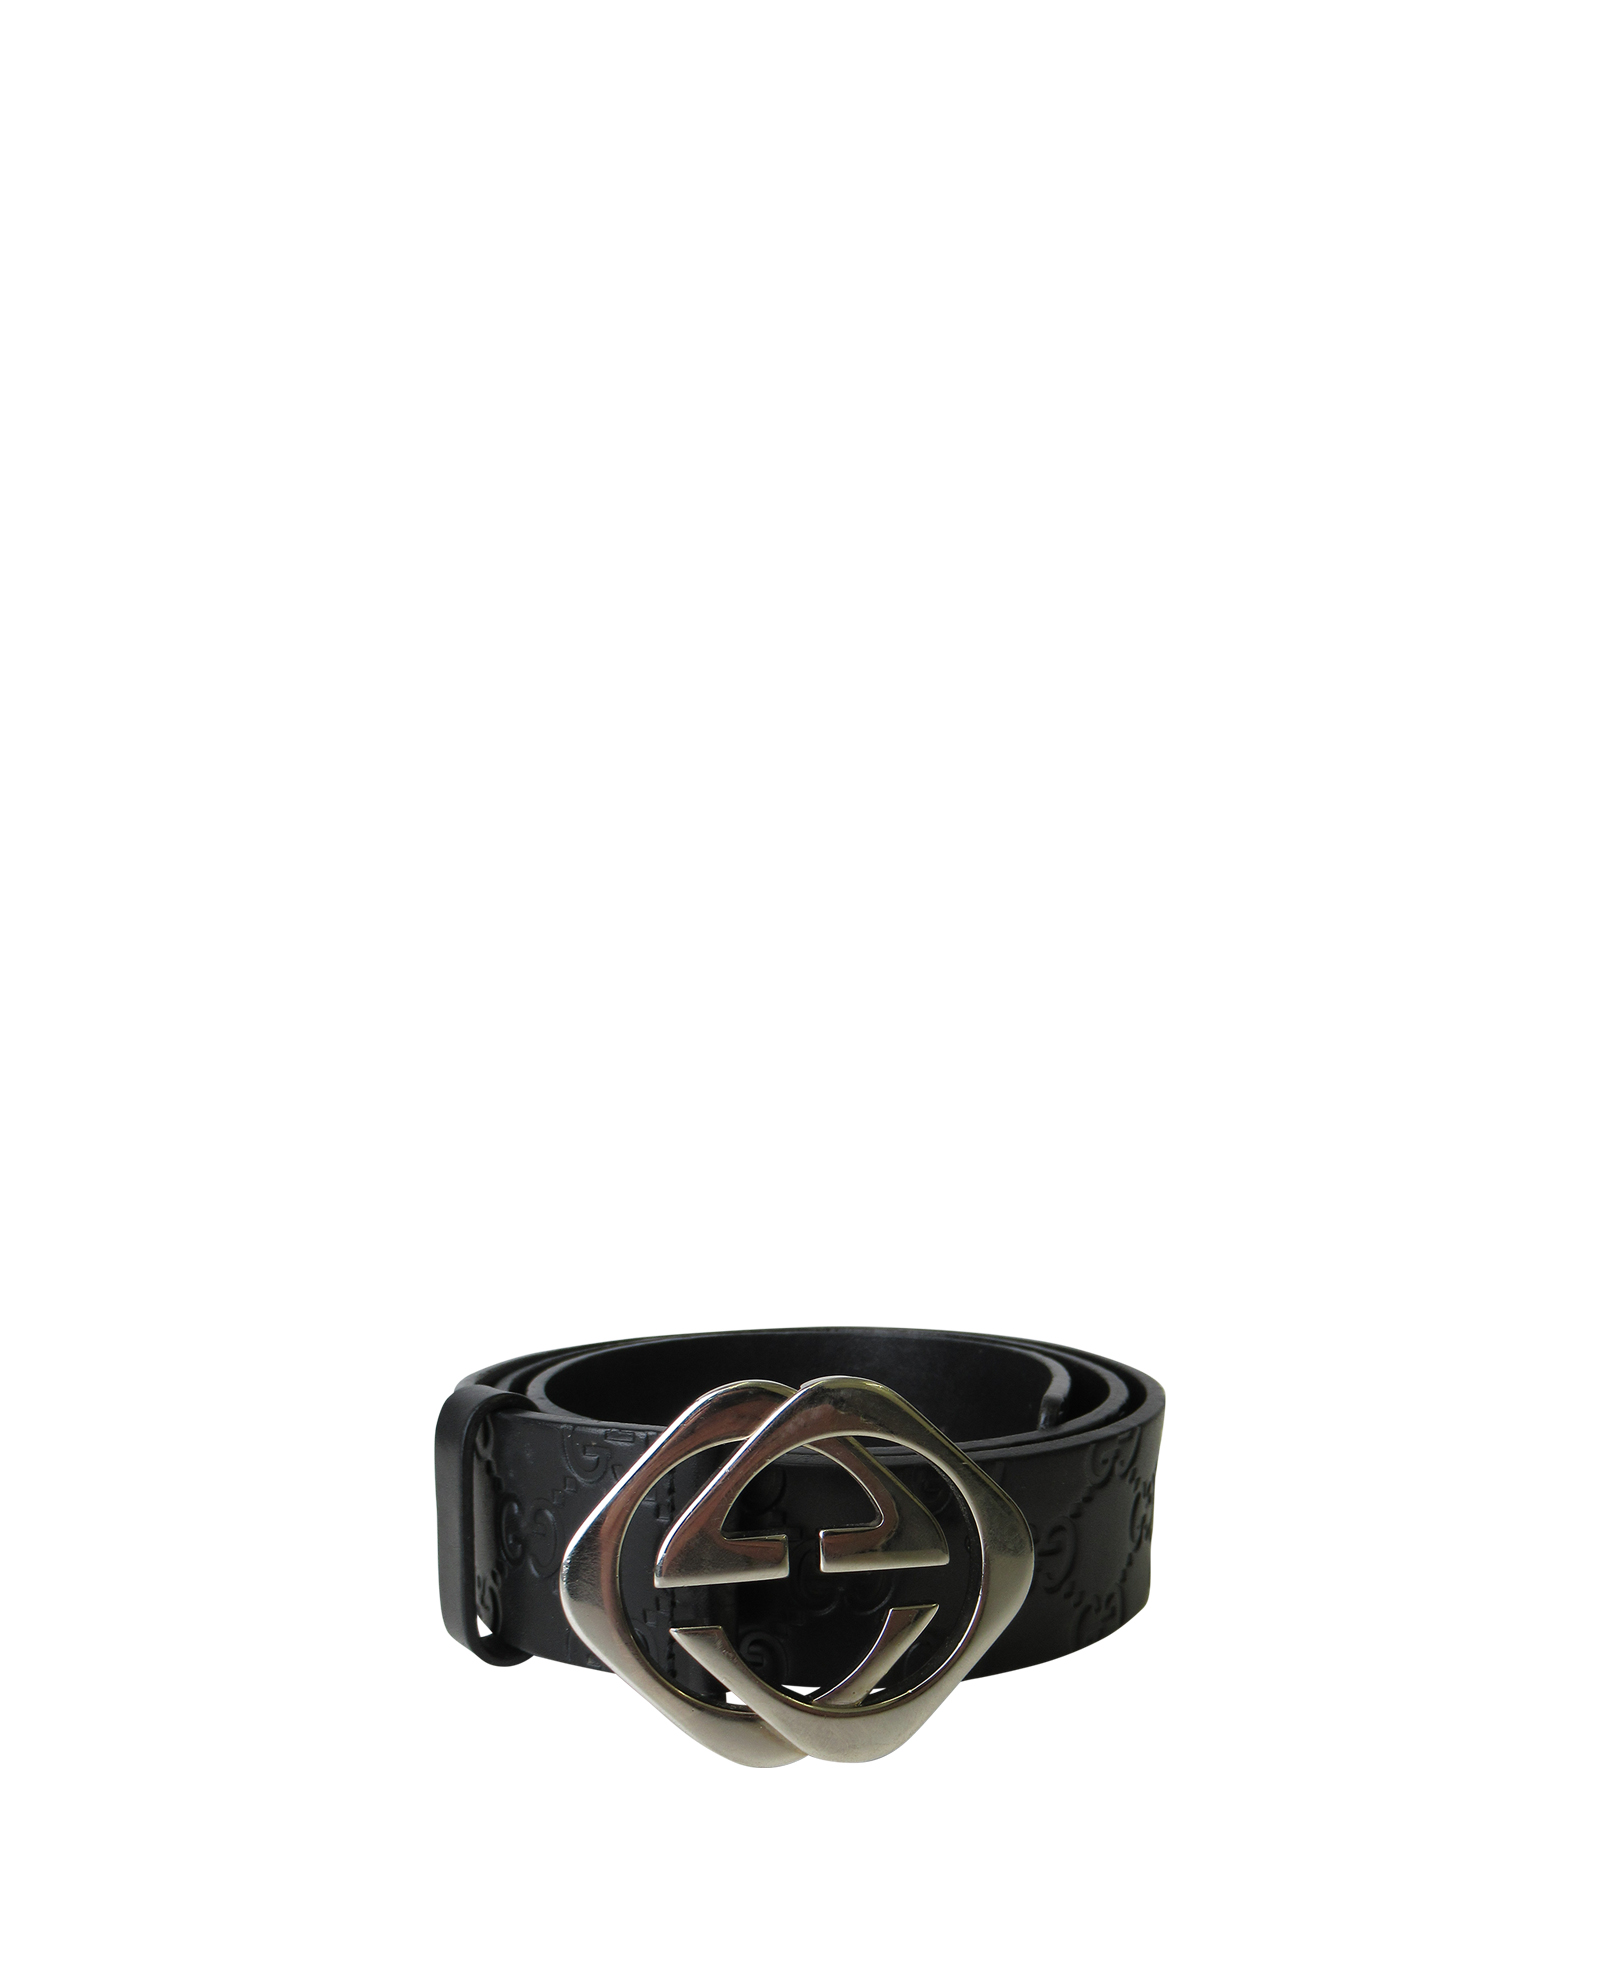 Gucci Cinturón Hebilla Cuadrada Cinturones - Designer Exchange | Comprar Vender Intercambiar